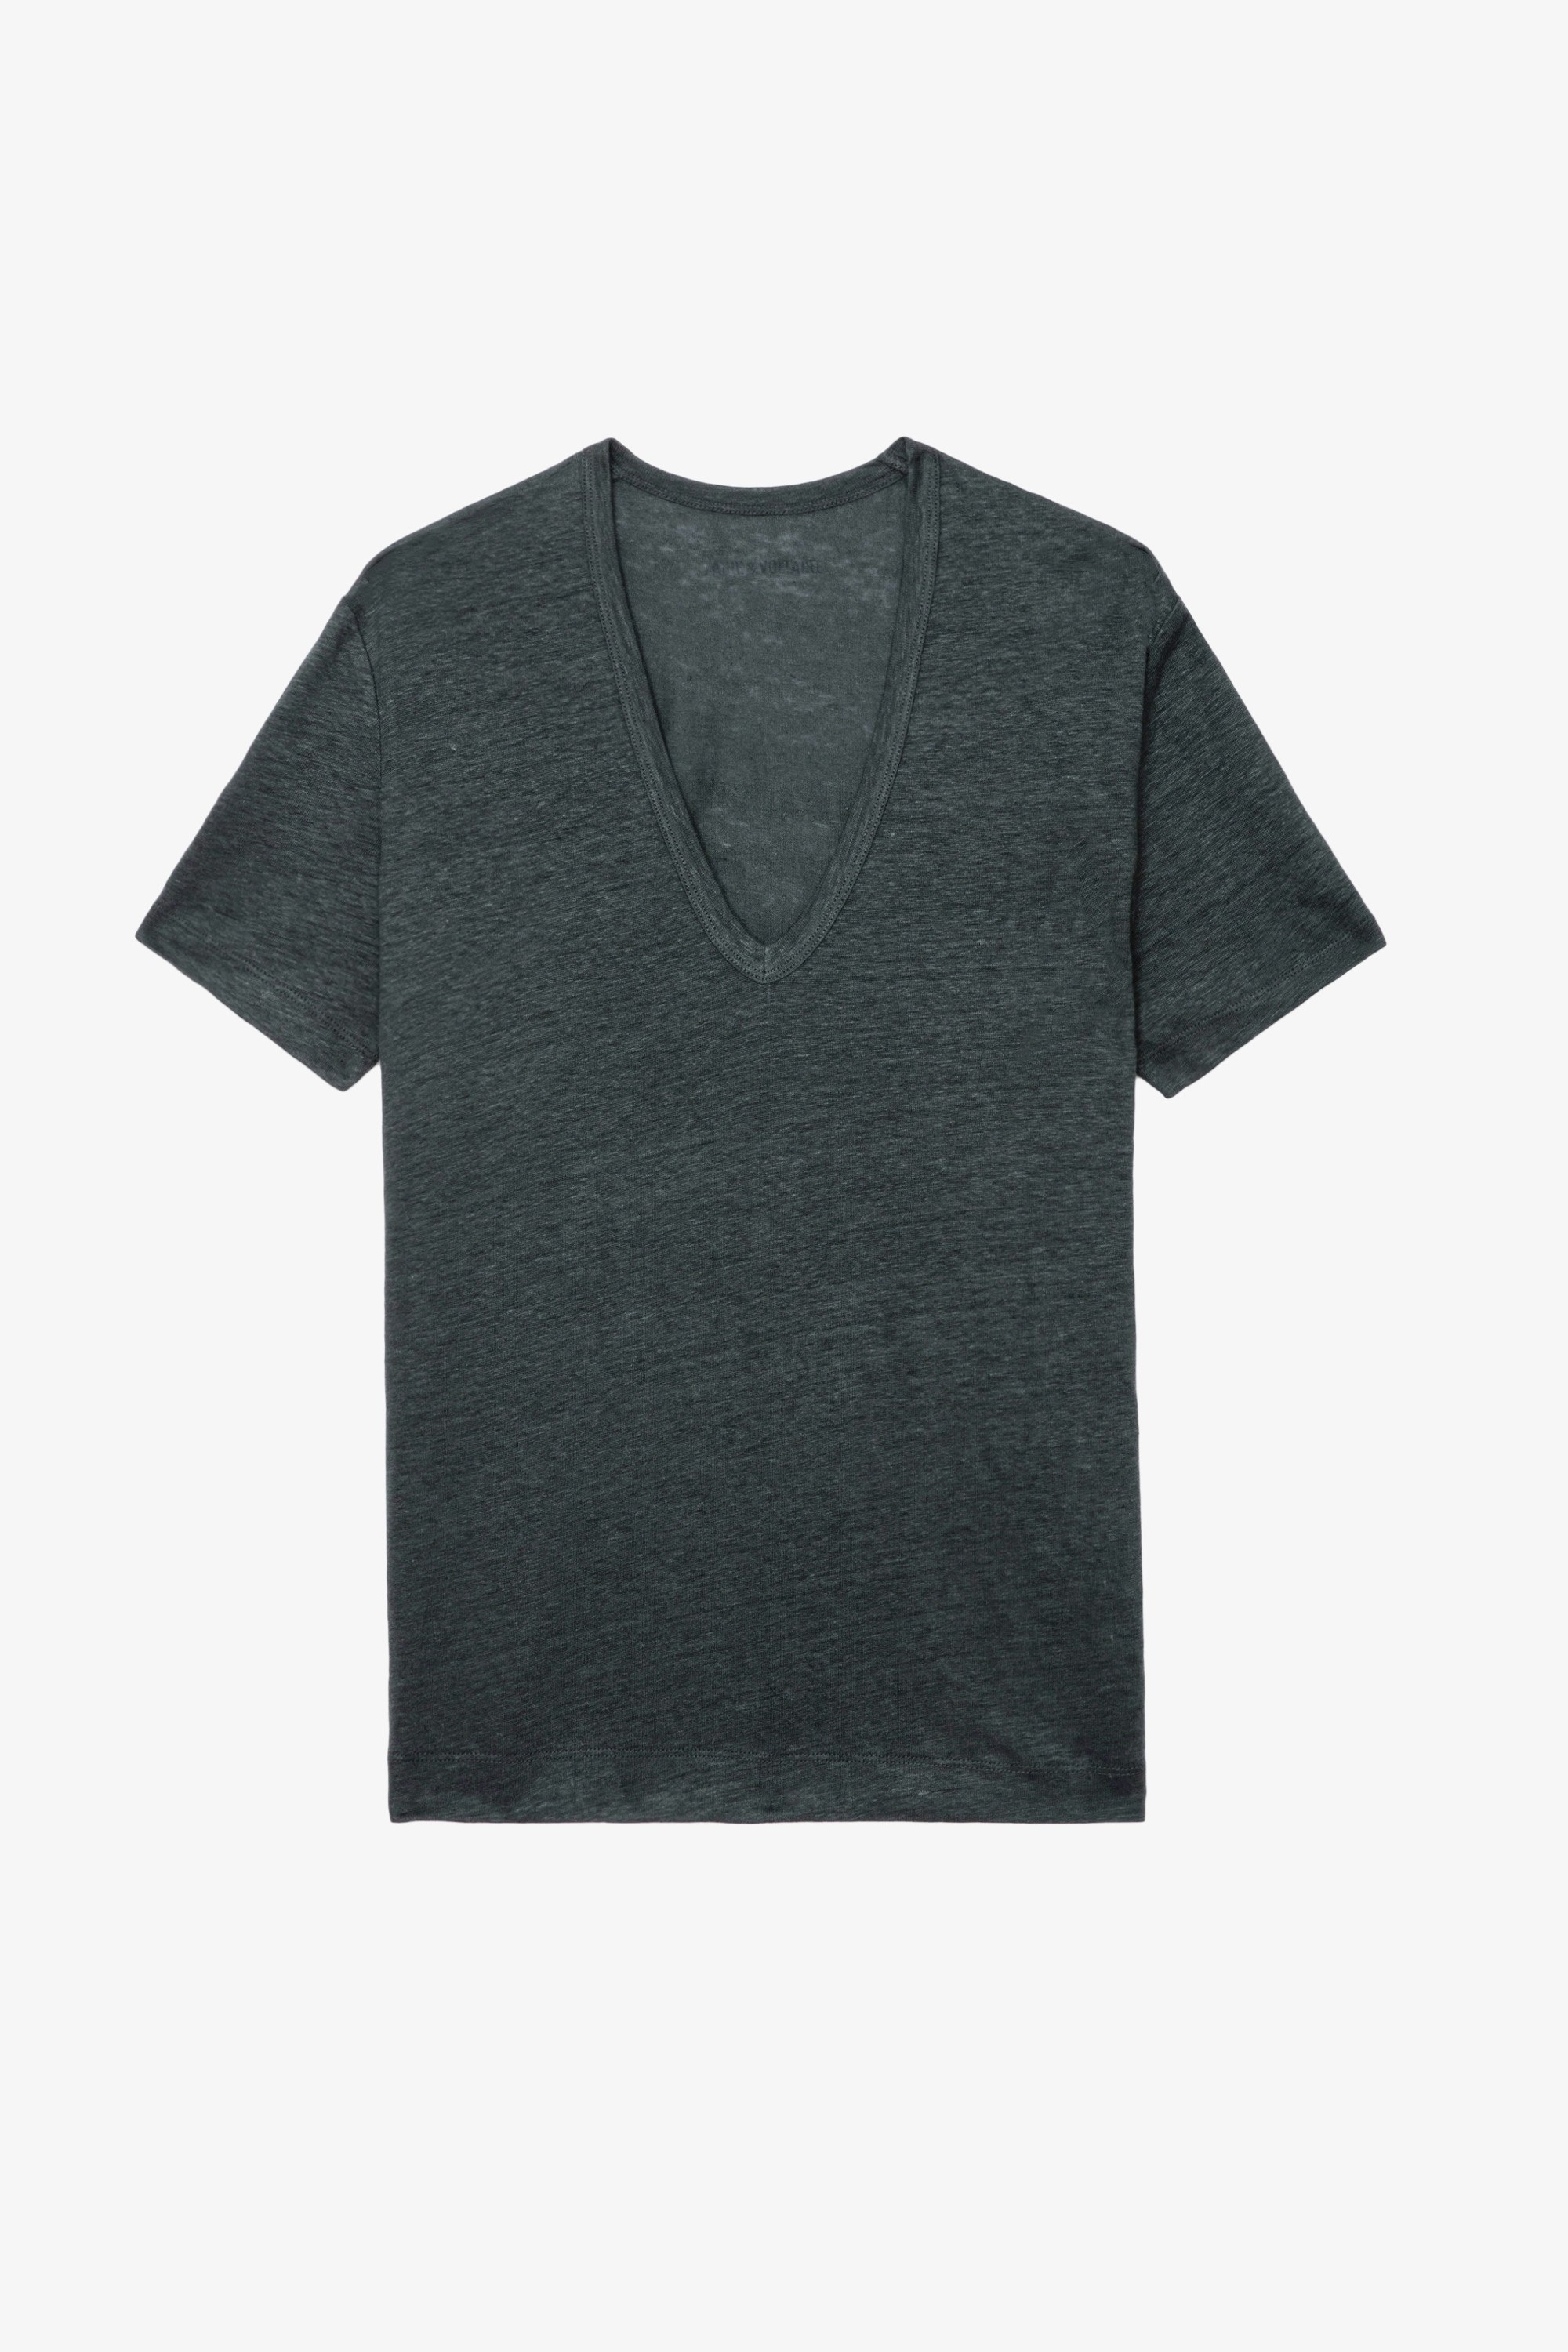 Camiseta de Lino Wassa - Camiseta de lino ecológico en color gris oscuro con cuello en V y mangas cortas.